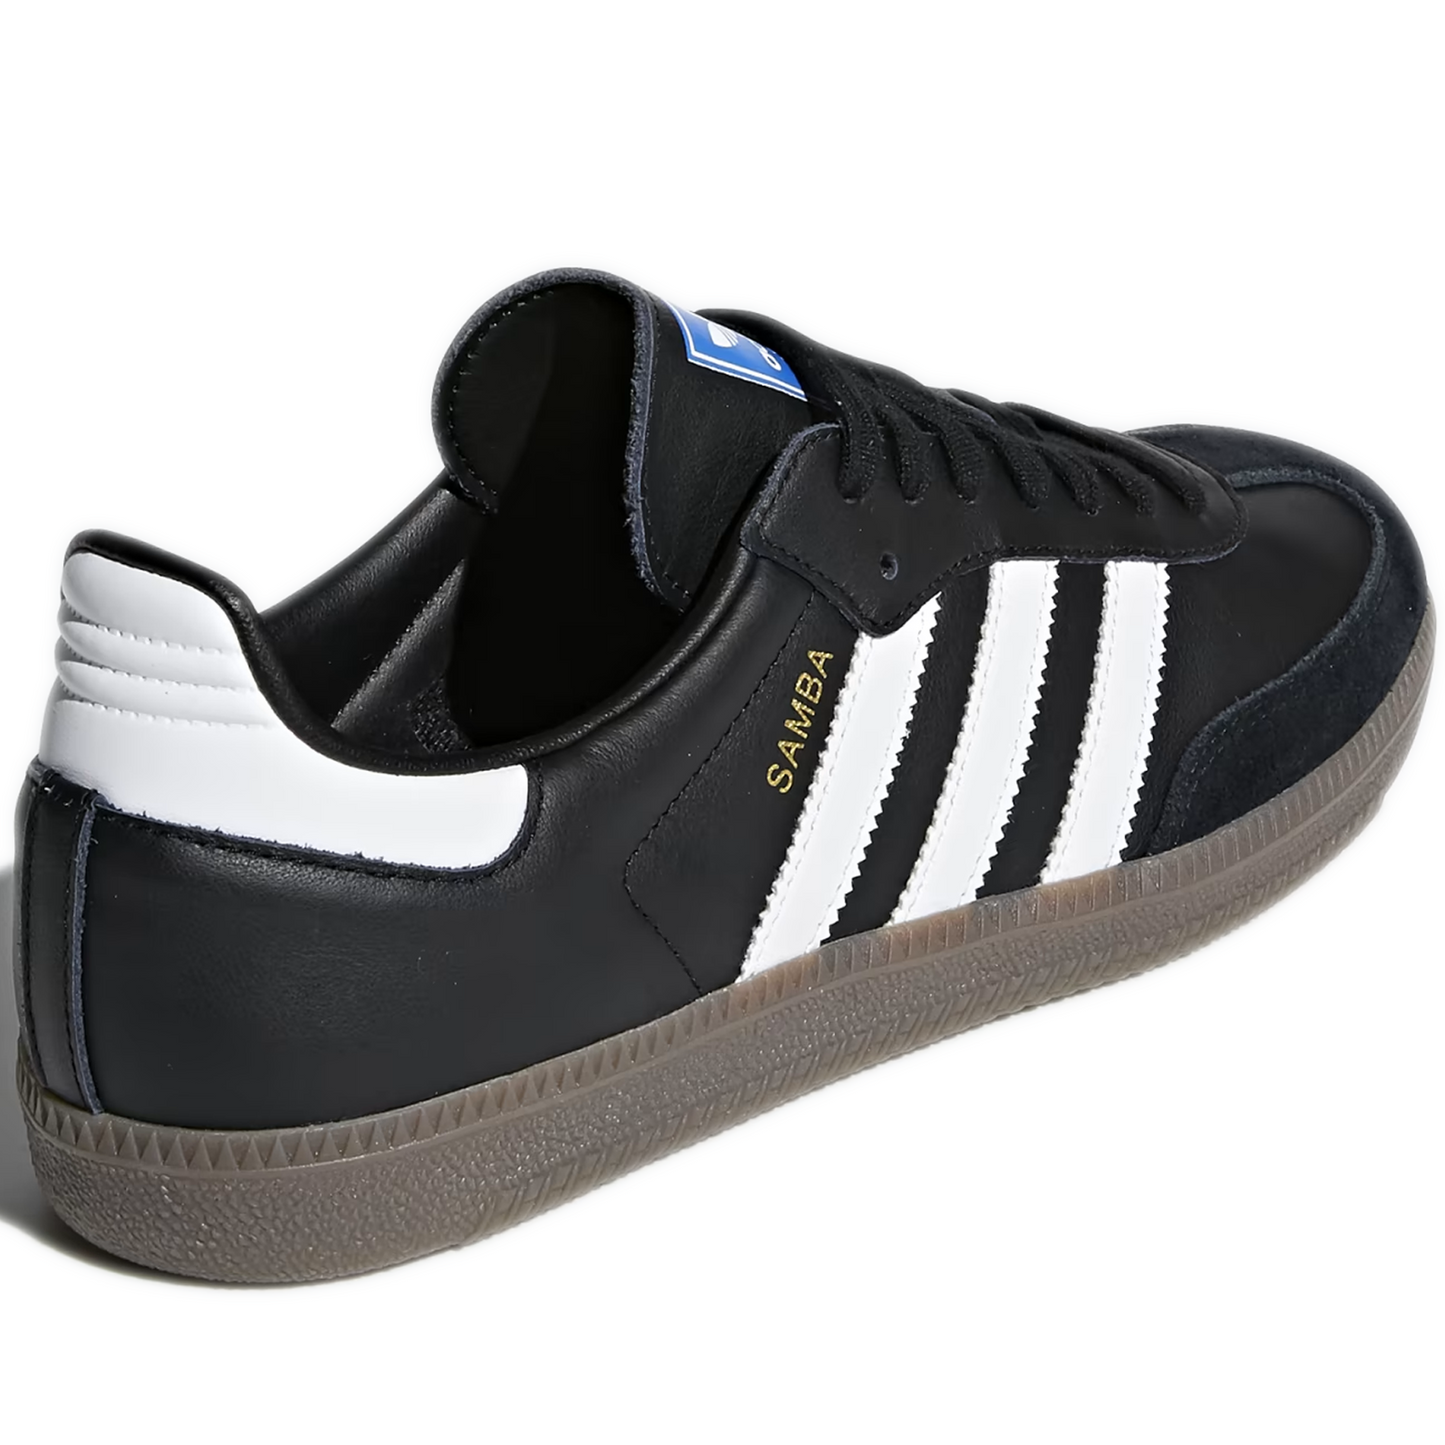 Men's Adidas Samba OG Shoes - Black/ White/ Gum